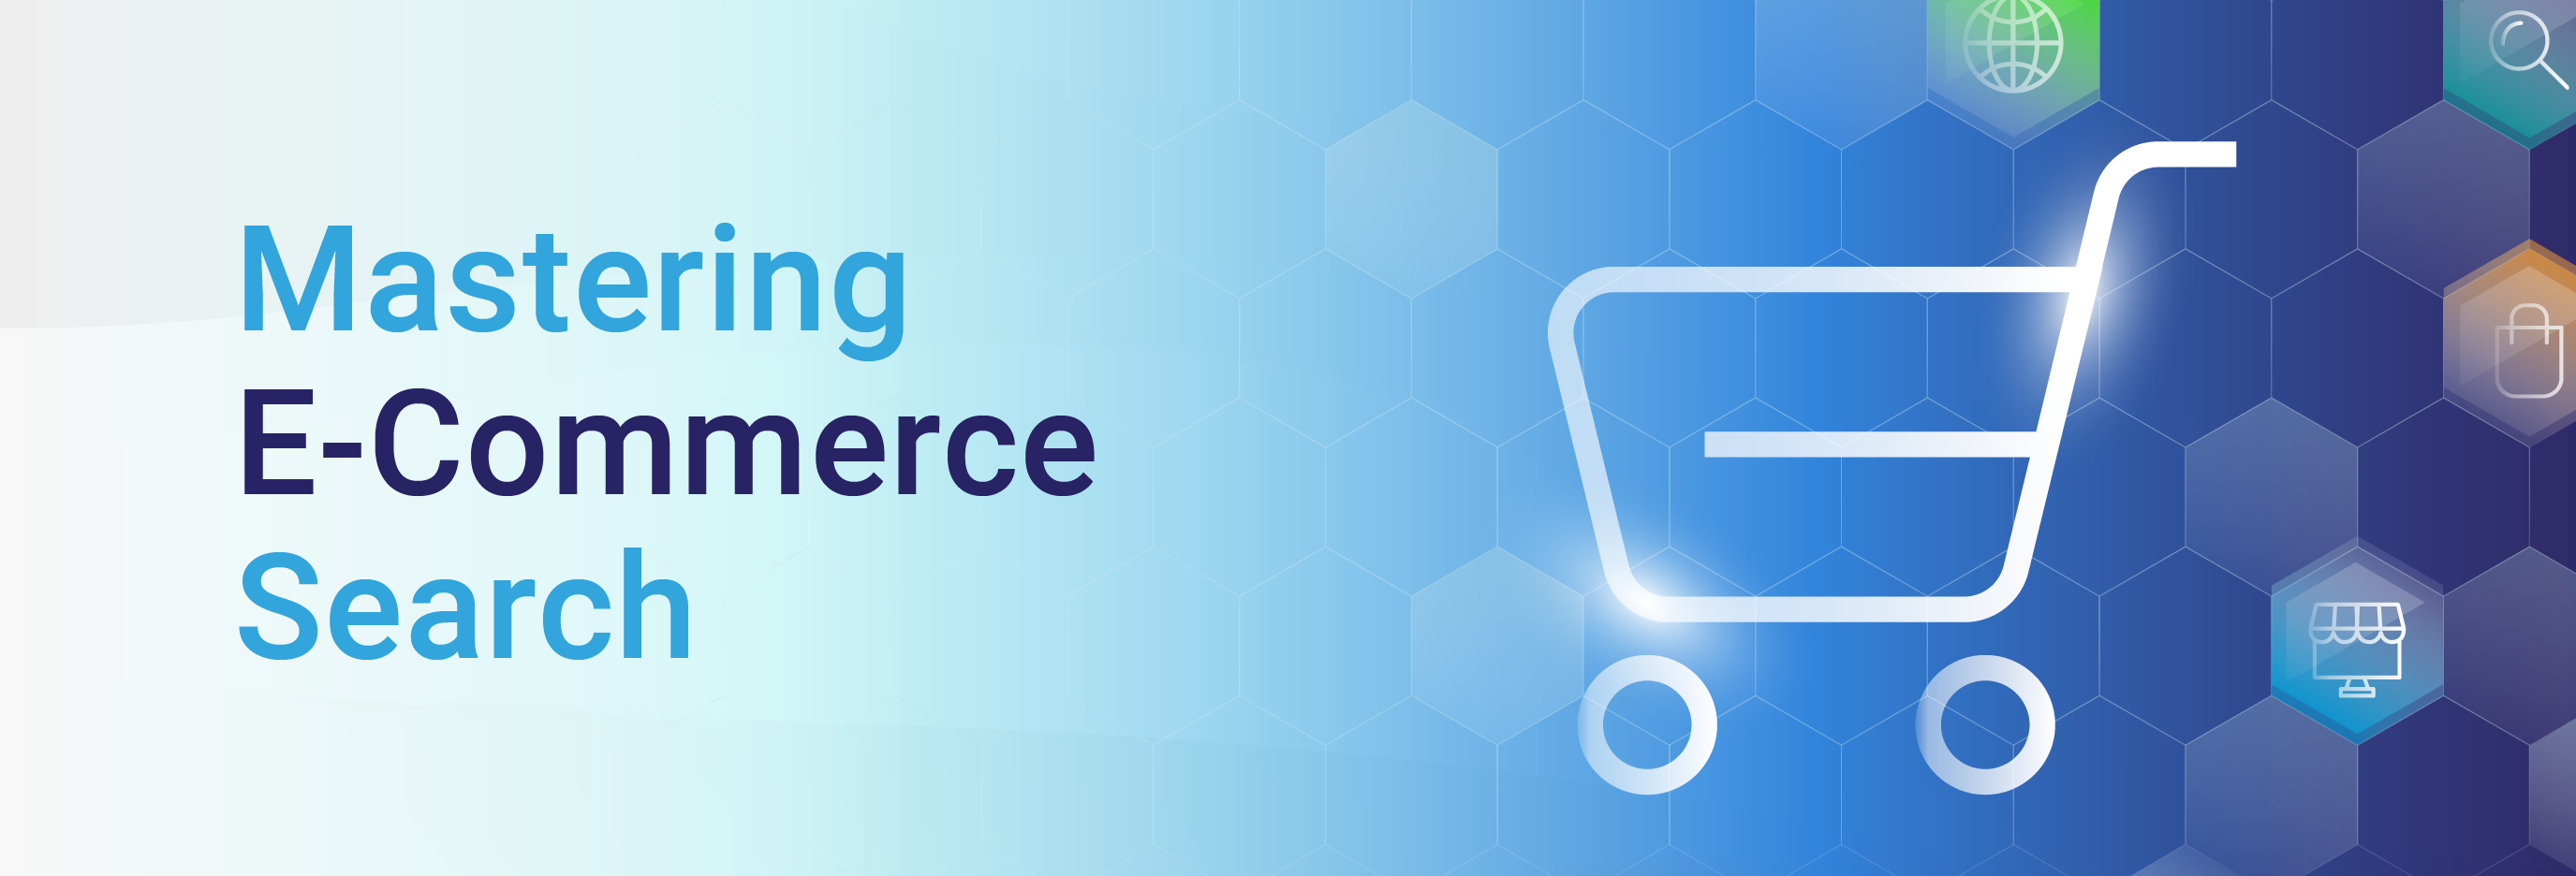 Mastering E-Commerce Search